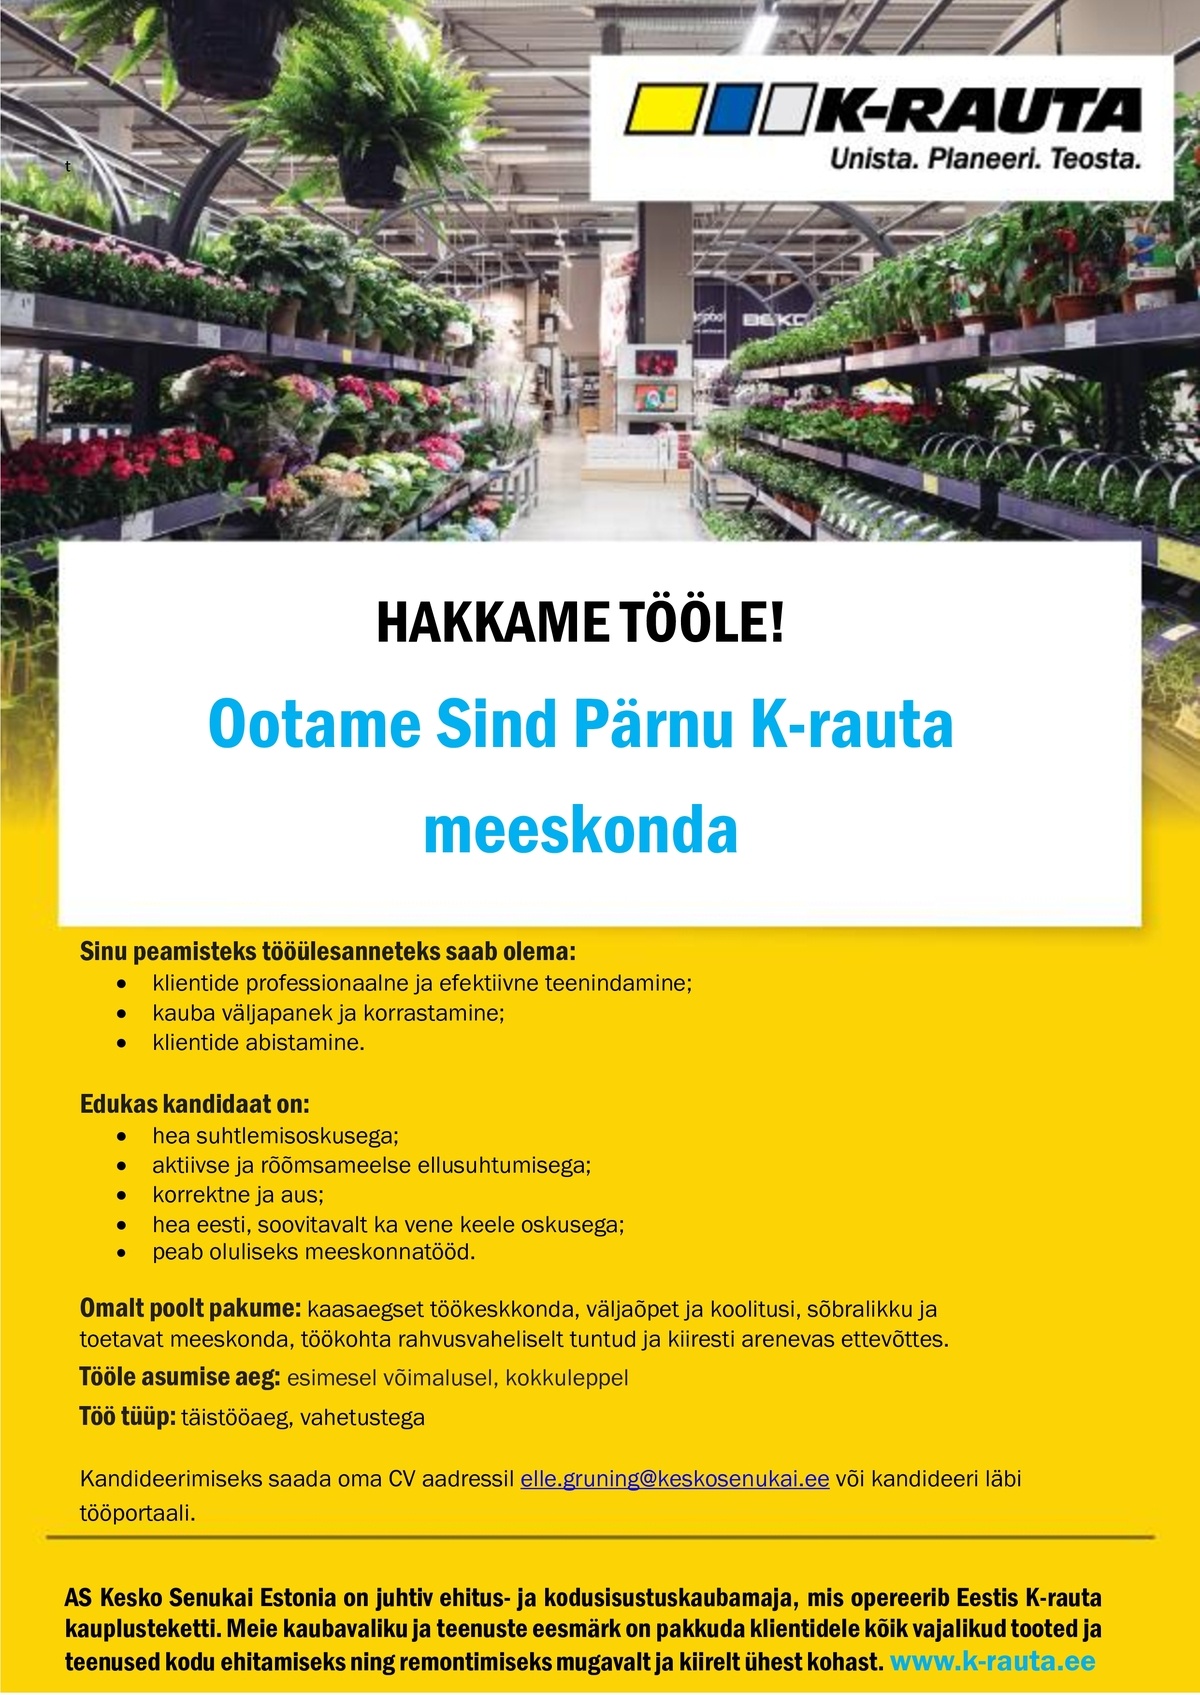 AS Kesko Senukai Estonia Müügikonsultant Pärnu K-rauta